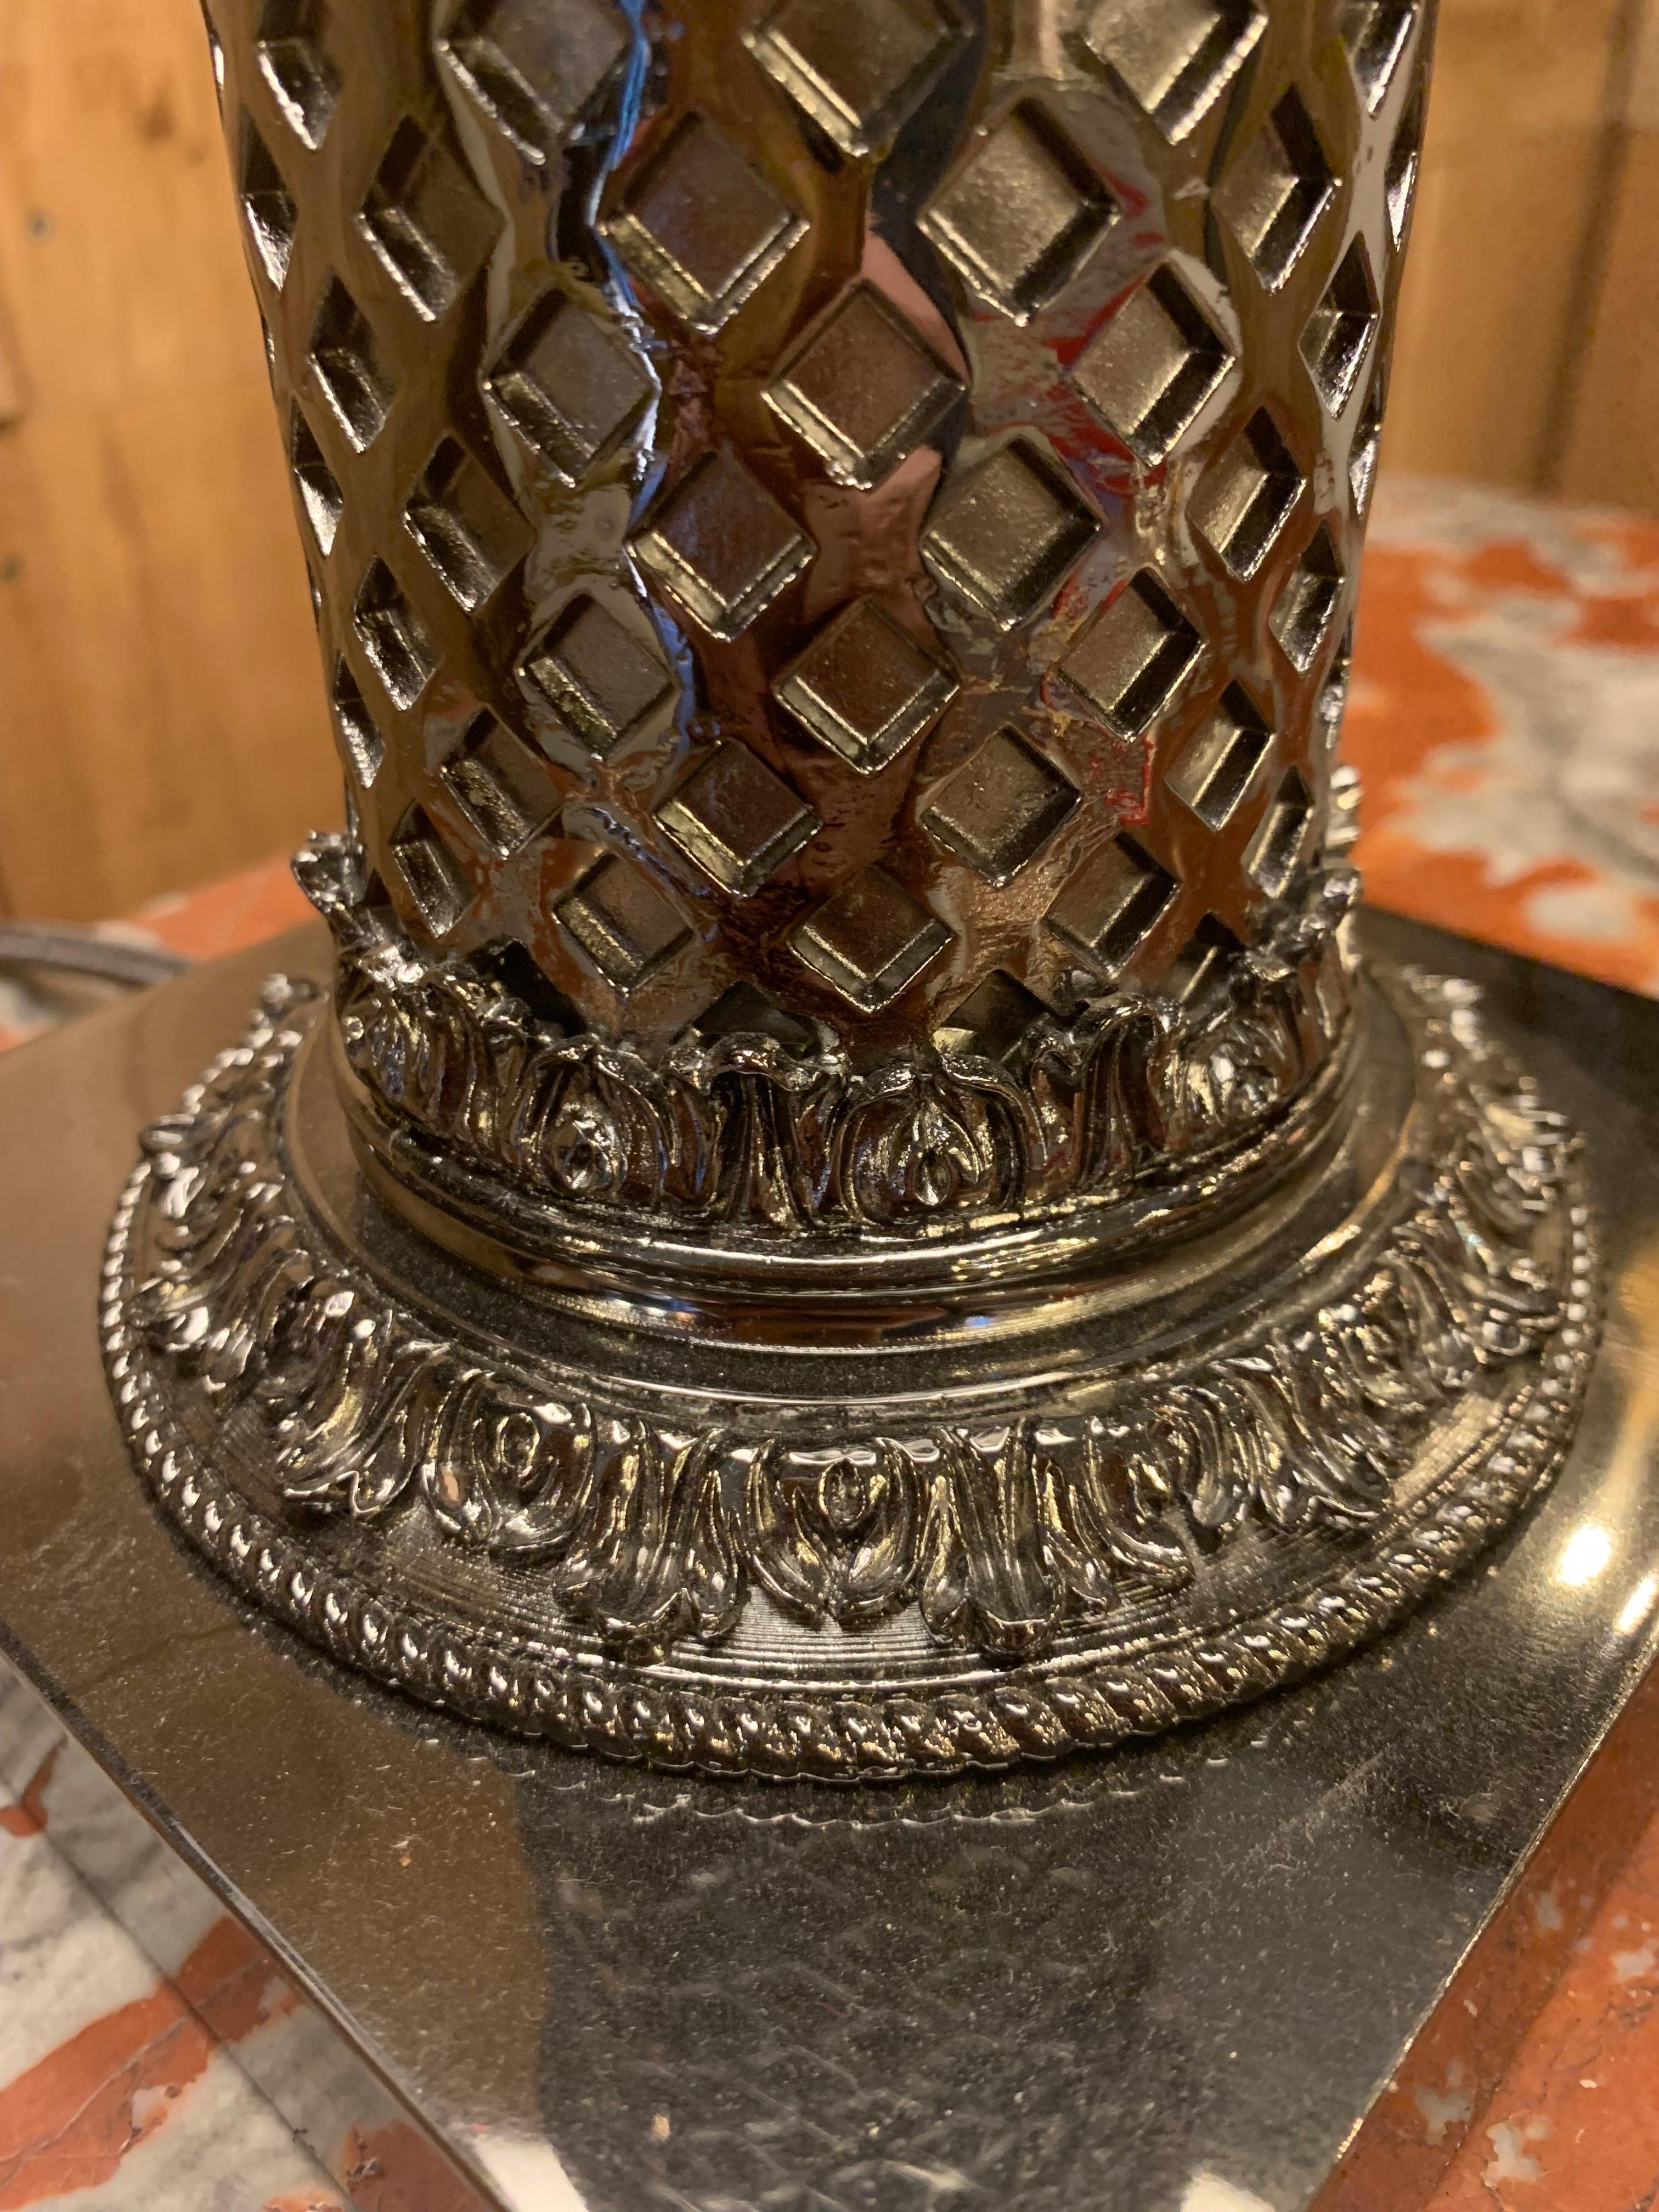 Tischlampe des Stils napoleon III in schwarz vernickelter Bronze mit 3 Armen von Lichtern und seinem Lampenschirm...

Wir haben eine Tischlampe auf Lager, können sie aber auch nach Maß und in anderen Ausführungen wie 24 Karat Gold, Silber, Nickel,